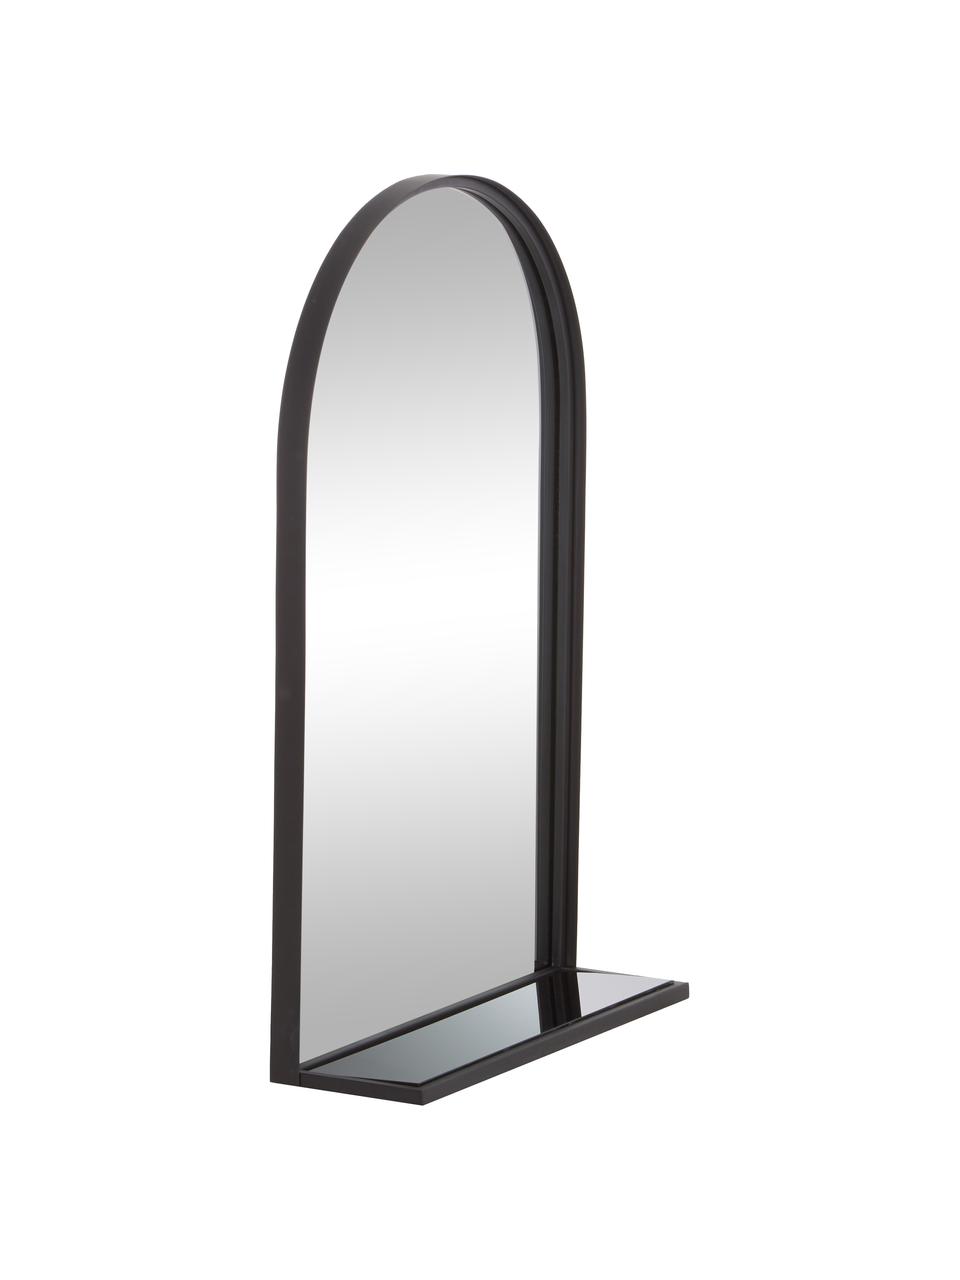 Wandspiegel Grisell mit schwarzem Metallrahmen und Ablagefläche, Rahmen: Metall, beschichtet, Ablagefläche: Glas, Spiegelfläche: Spiegelglas, Schwarz, B 46 x H 77 cm